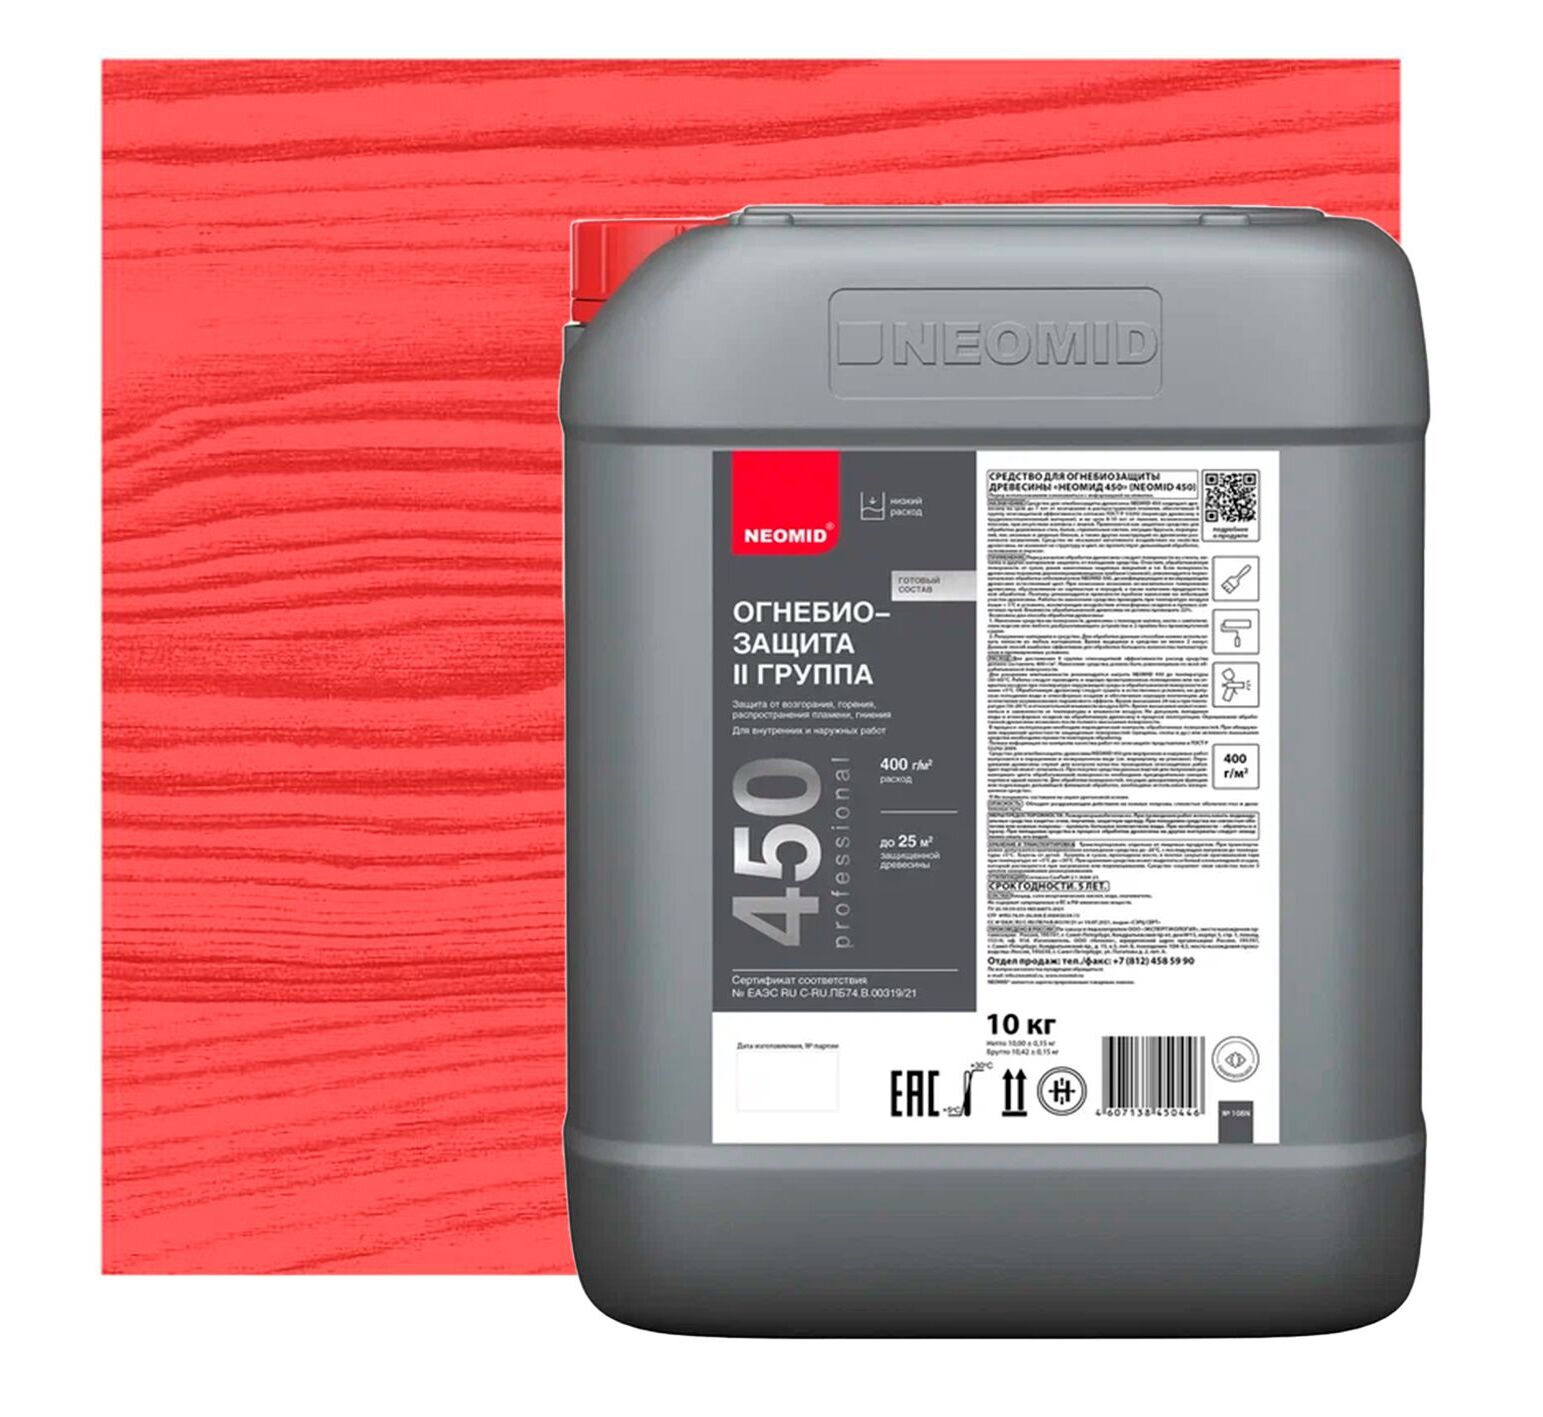 NEOMID 450 2 группа 10кг огнебиозащитный состав готовый тонированный, красный